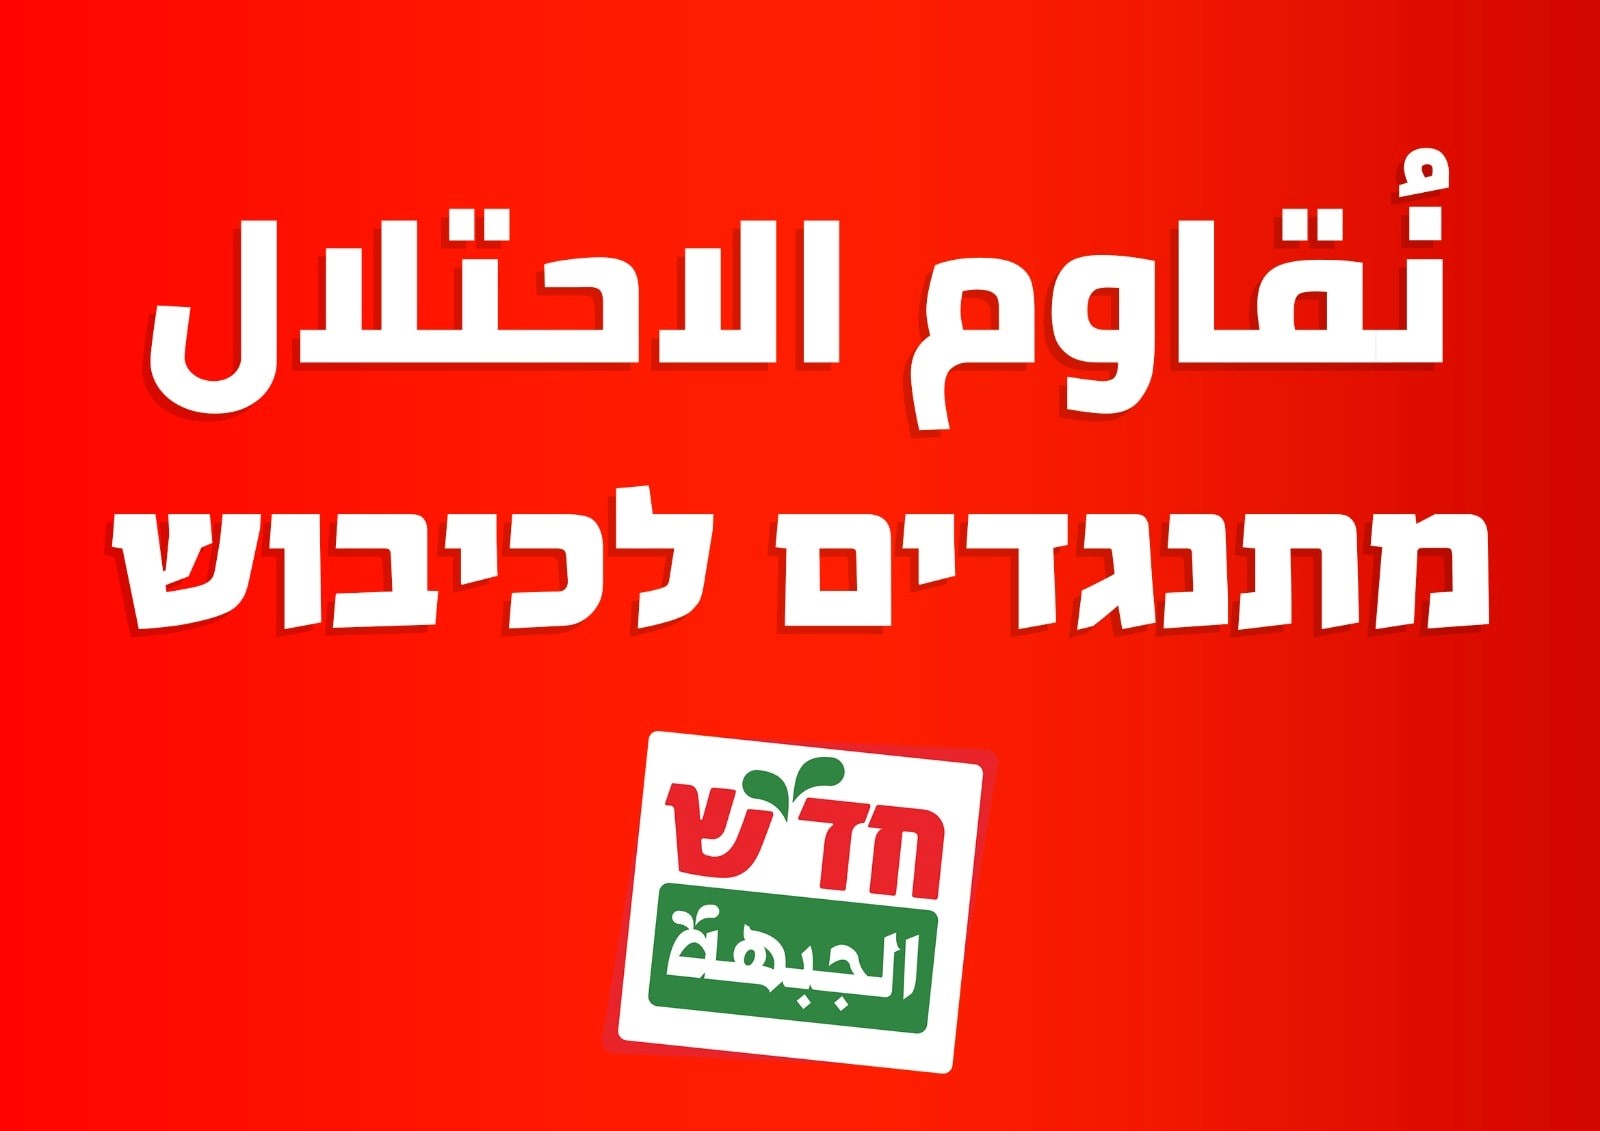 חד”ש ומק”י קוראות להשתתף בהפגנה נגד הכיבוש בכיכר הבימה